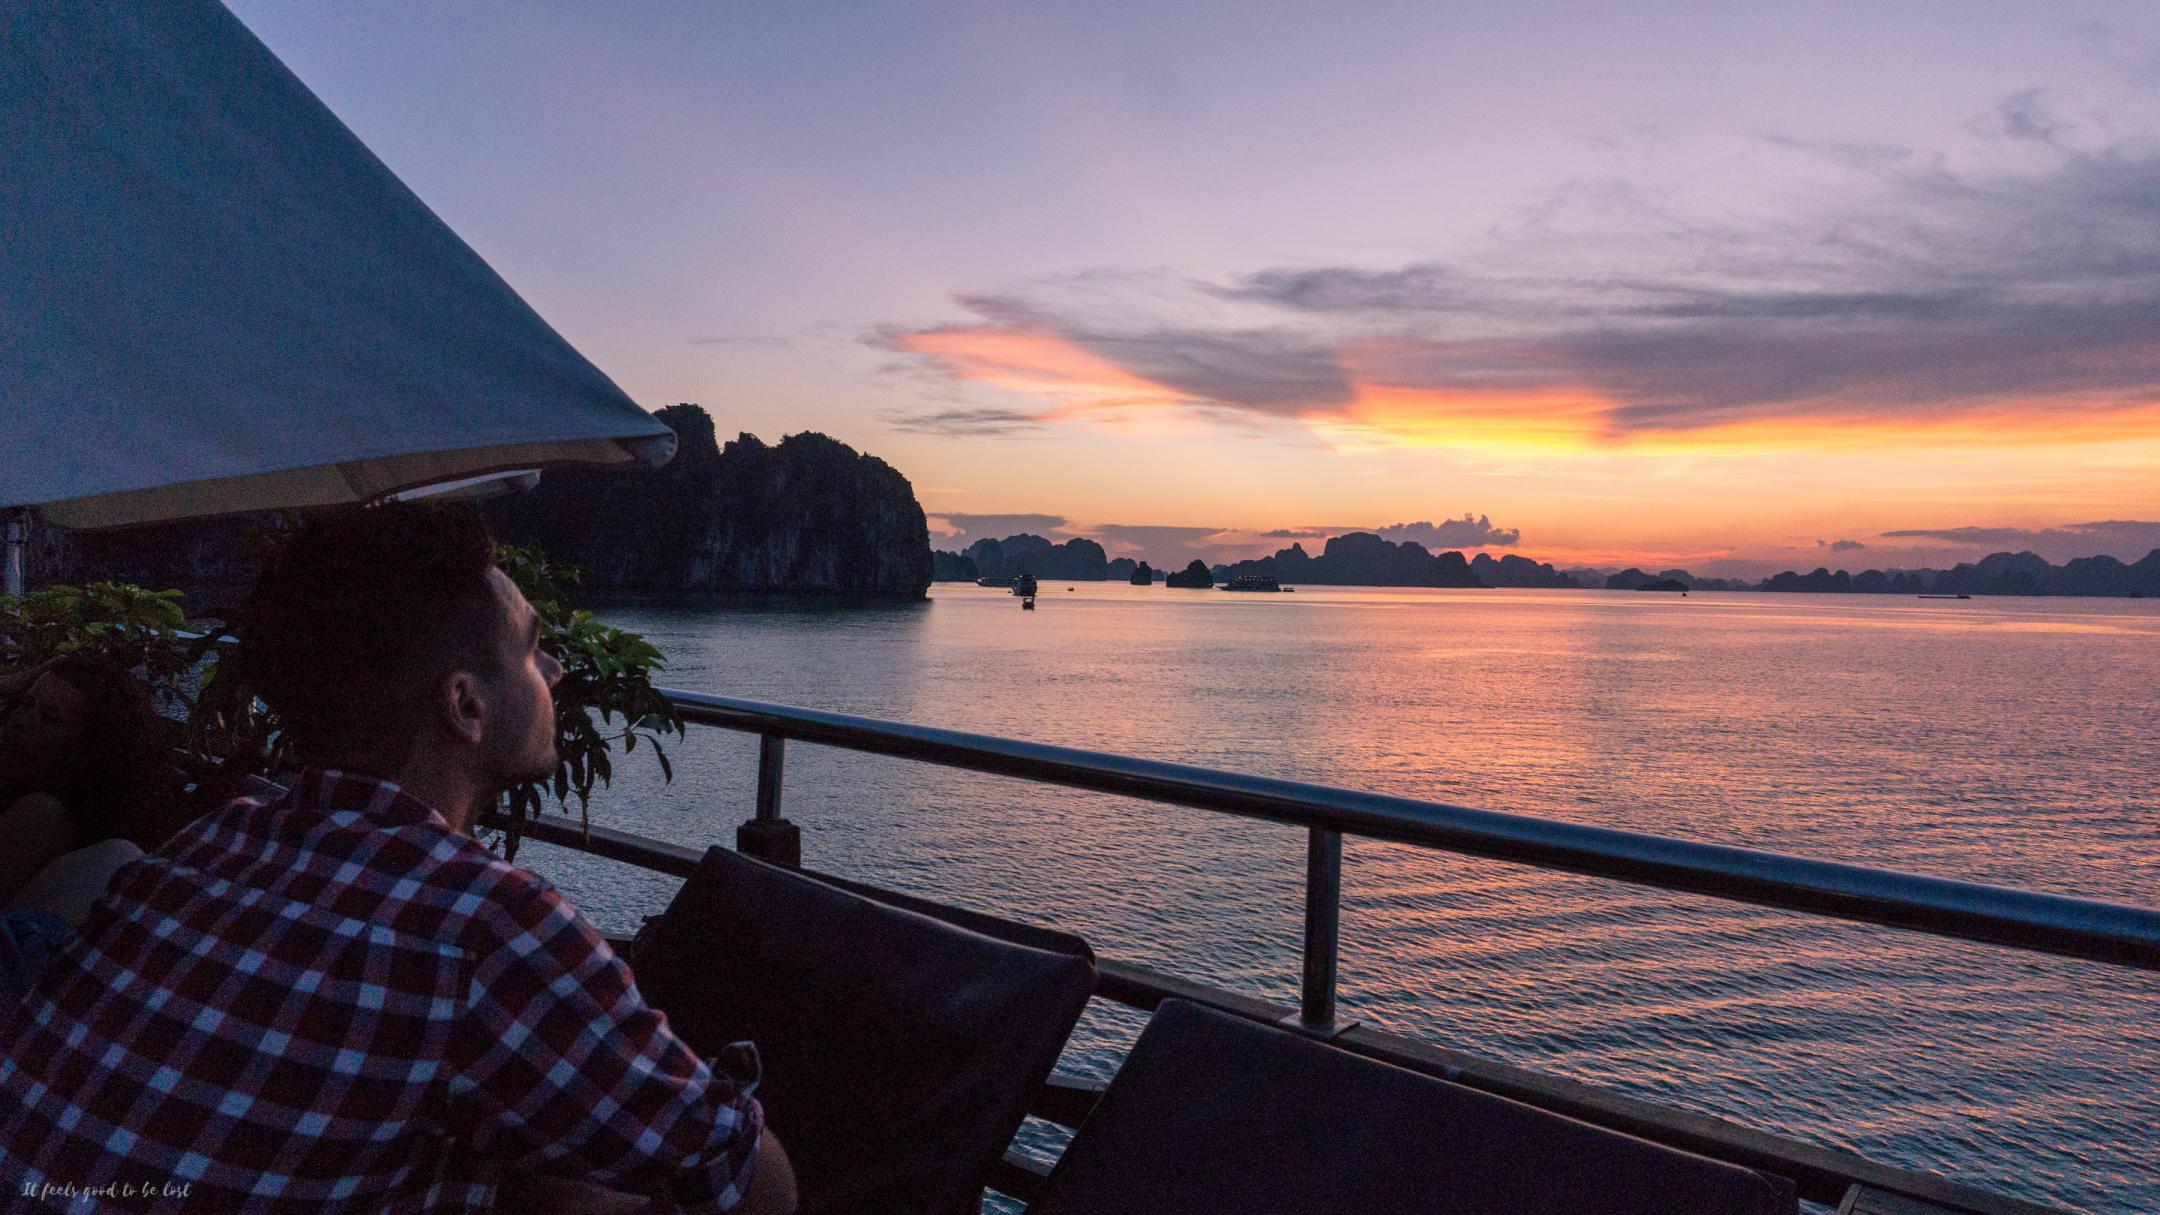 Rafa enjoy Ha Long Bay views from the boat